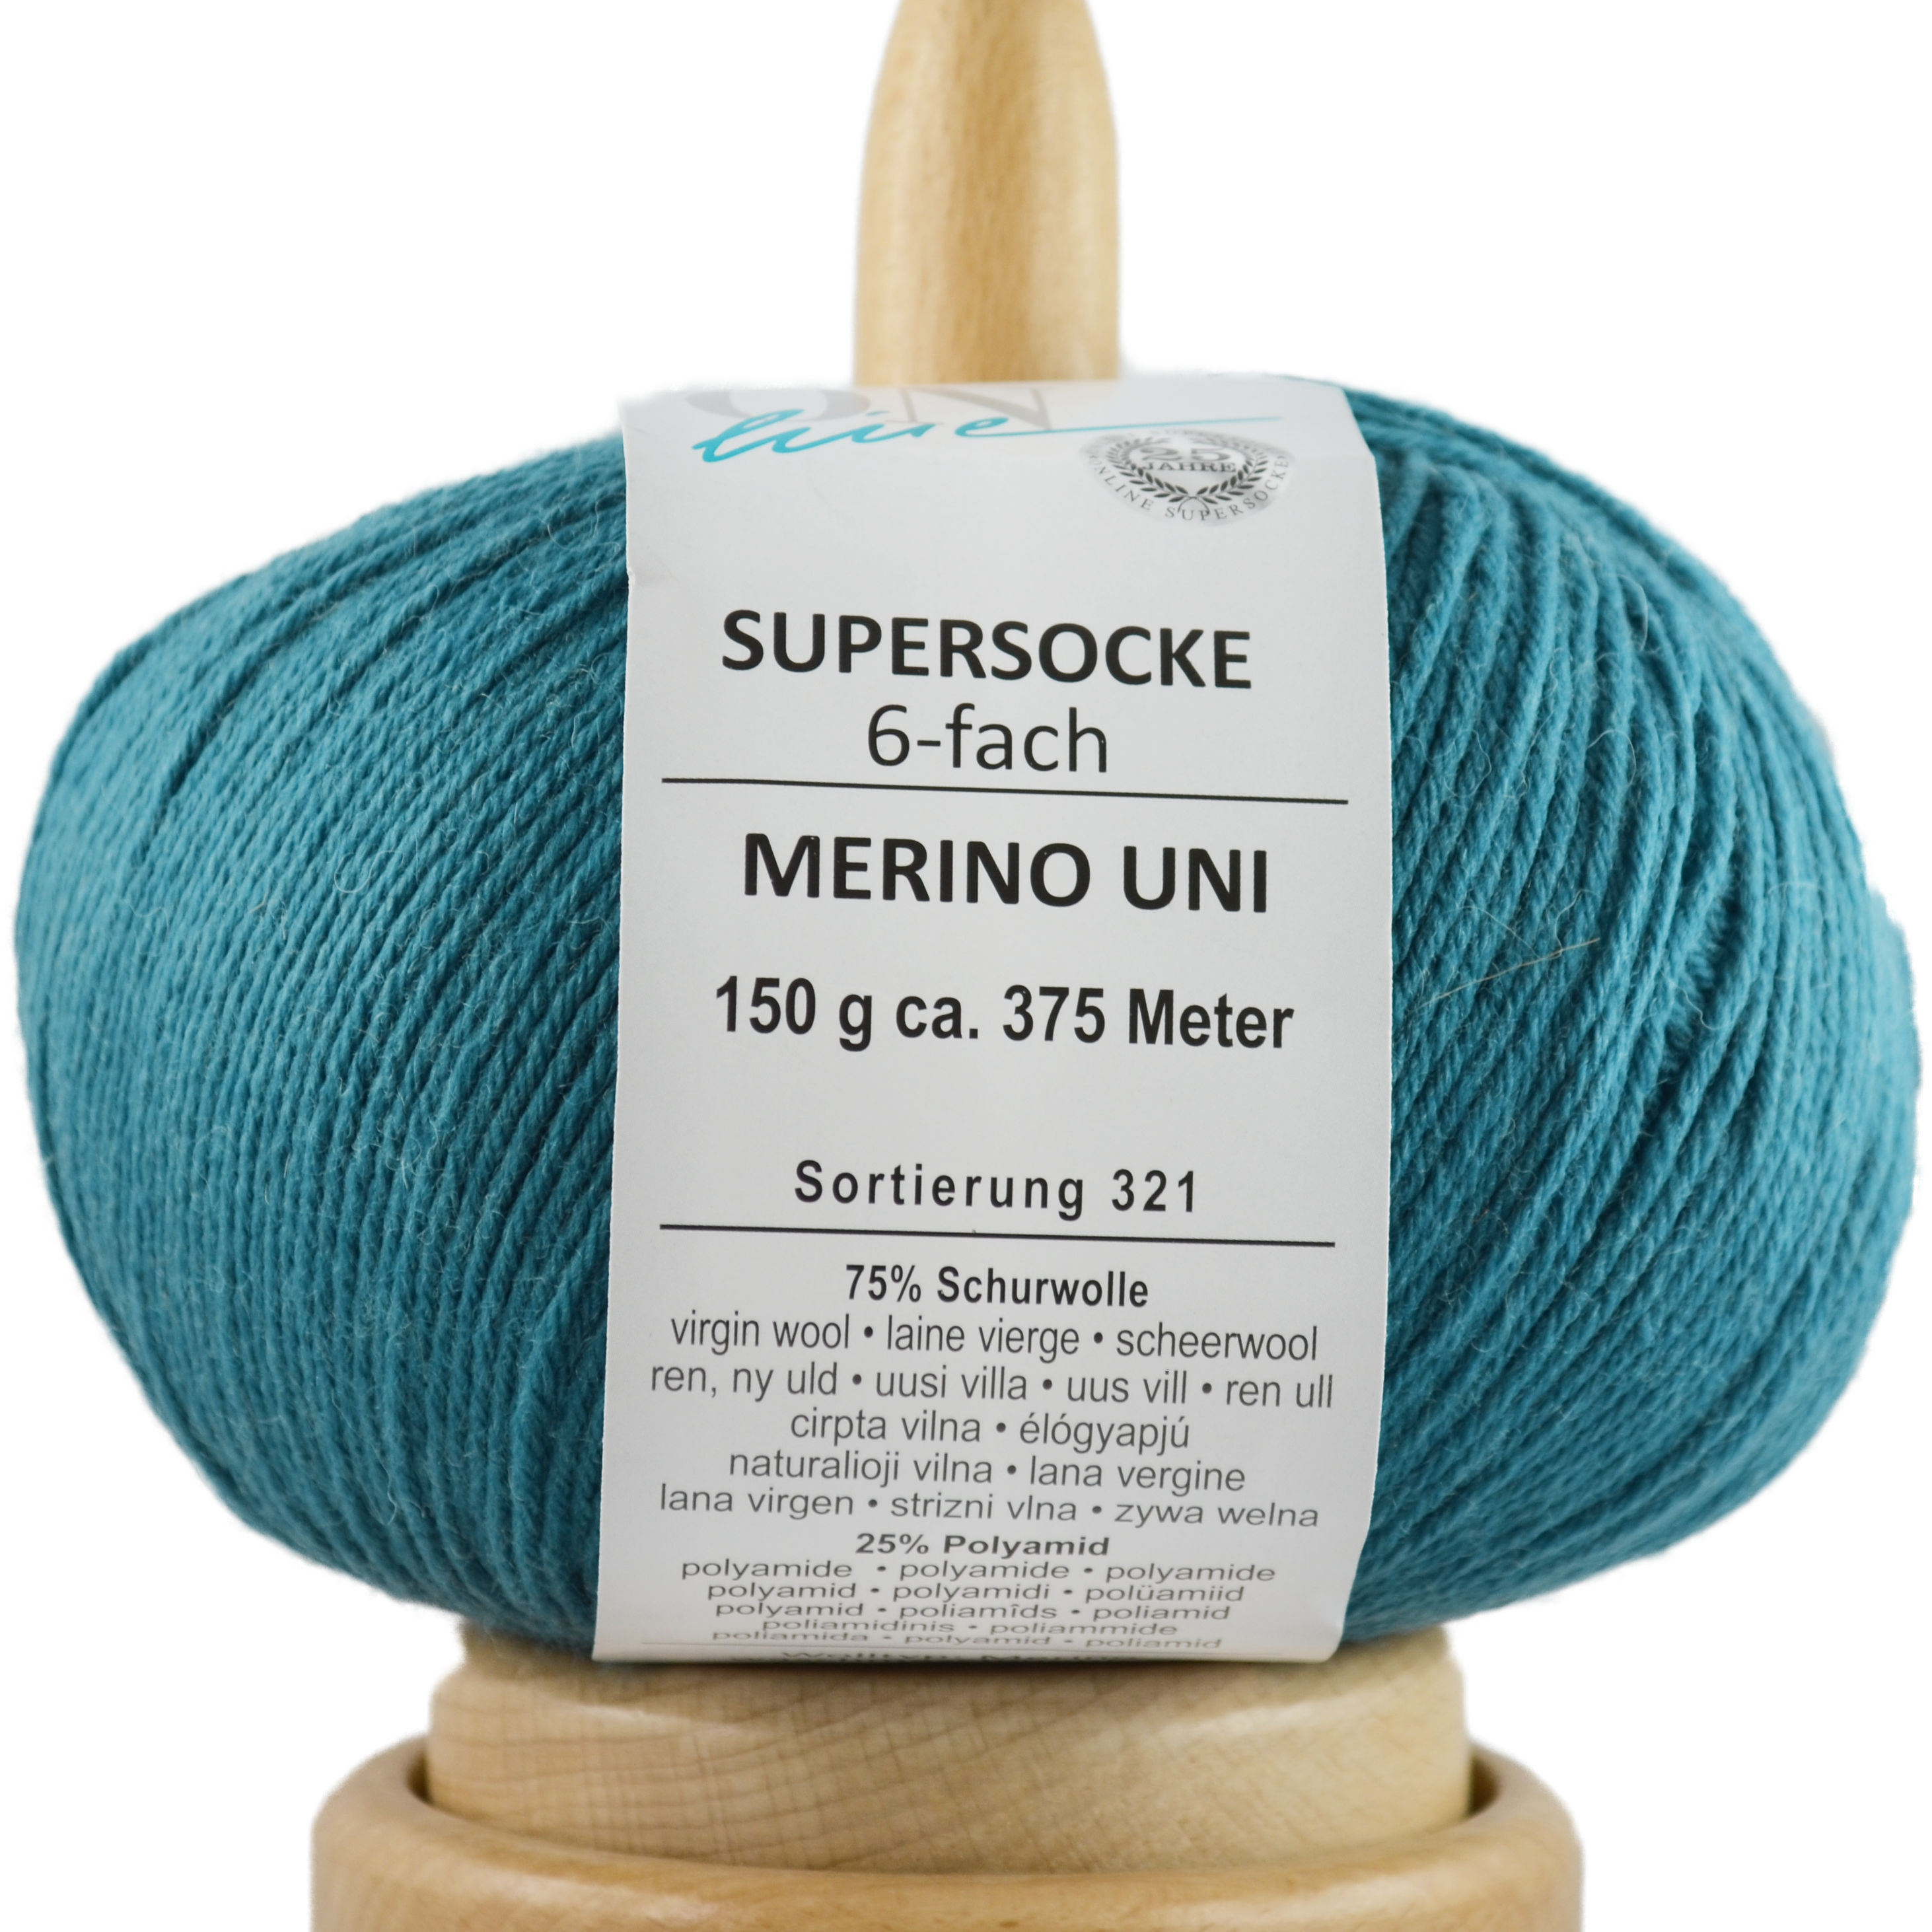 Supersocke 6-fach Merino Uni von ONline Sort. 321 - 5006 - jade